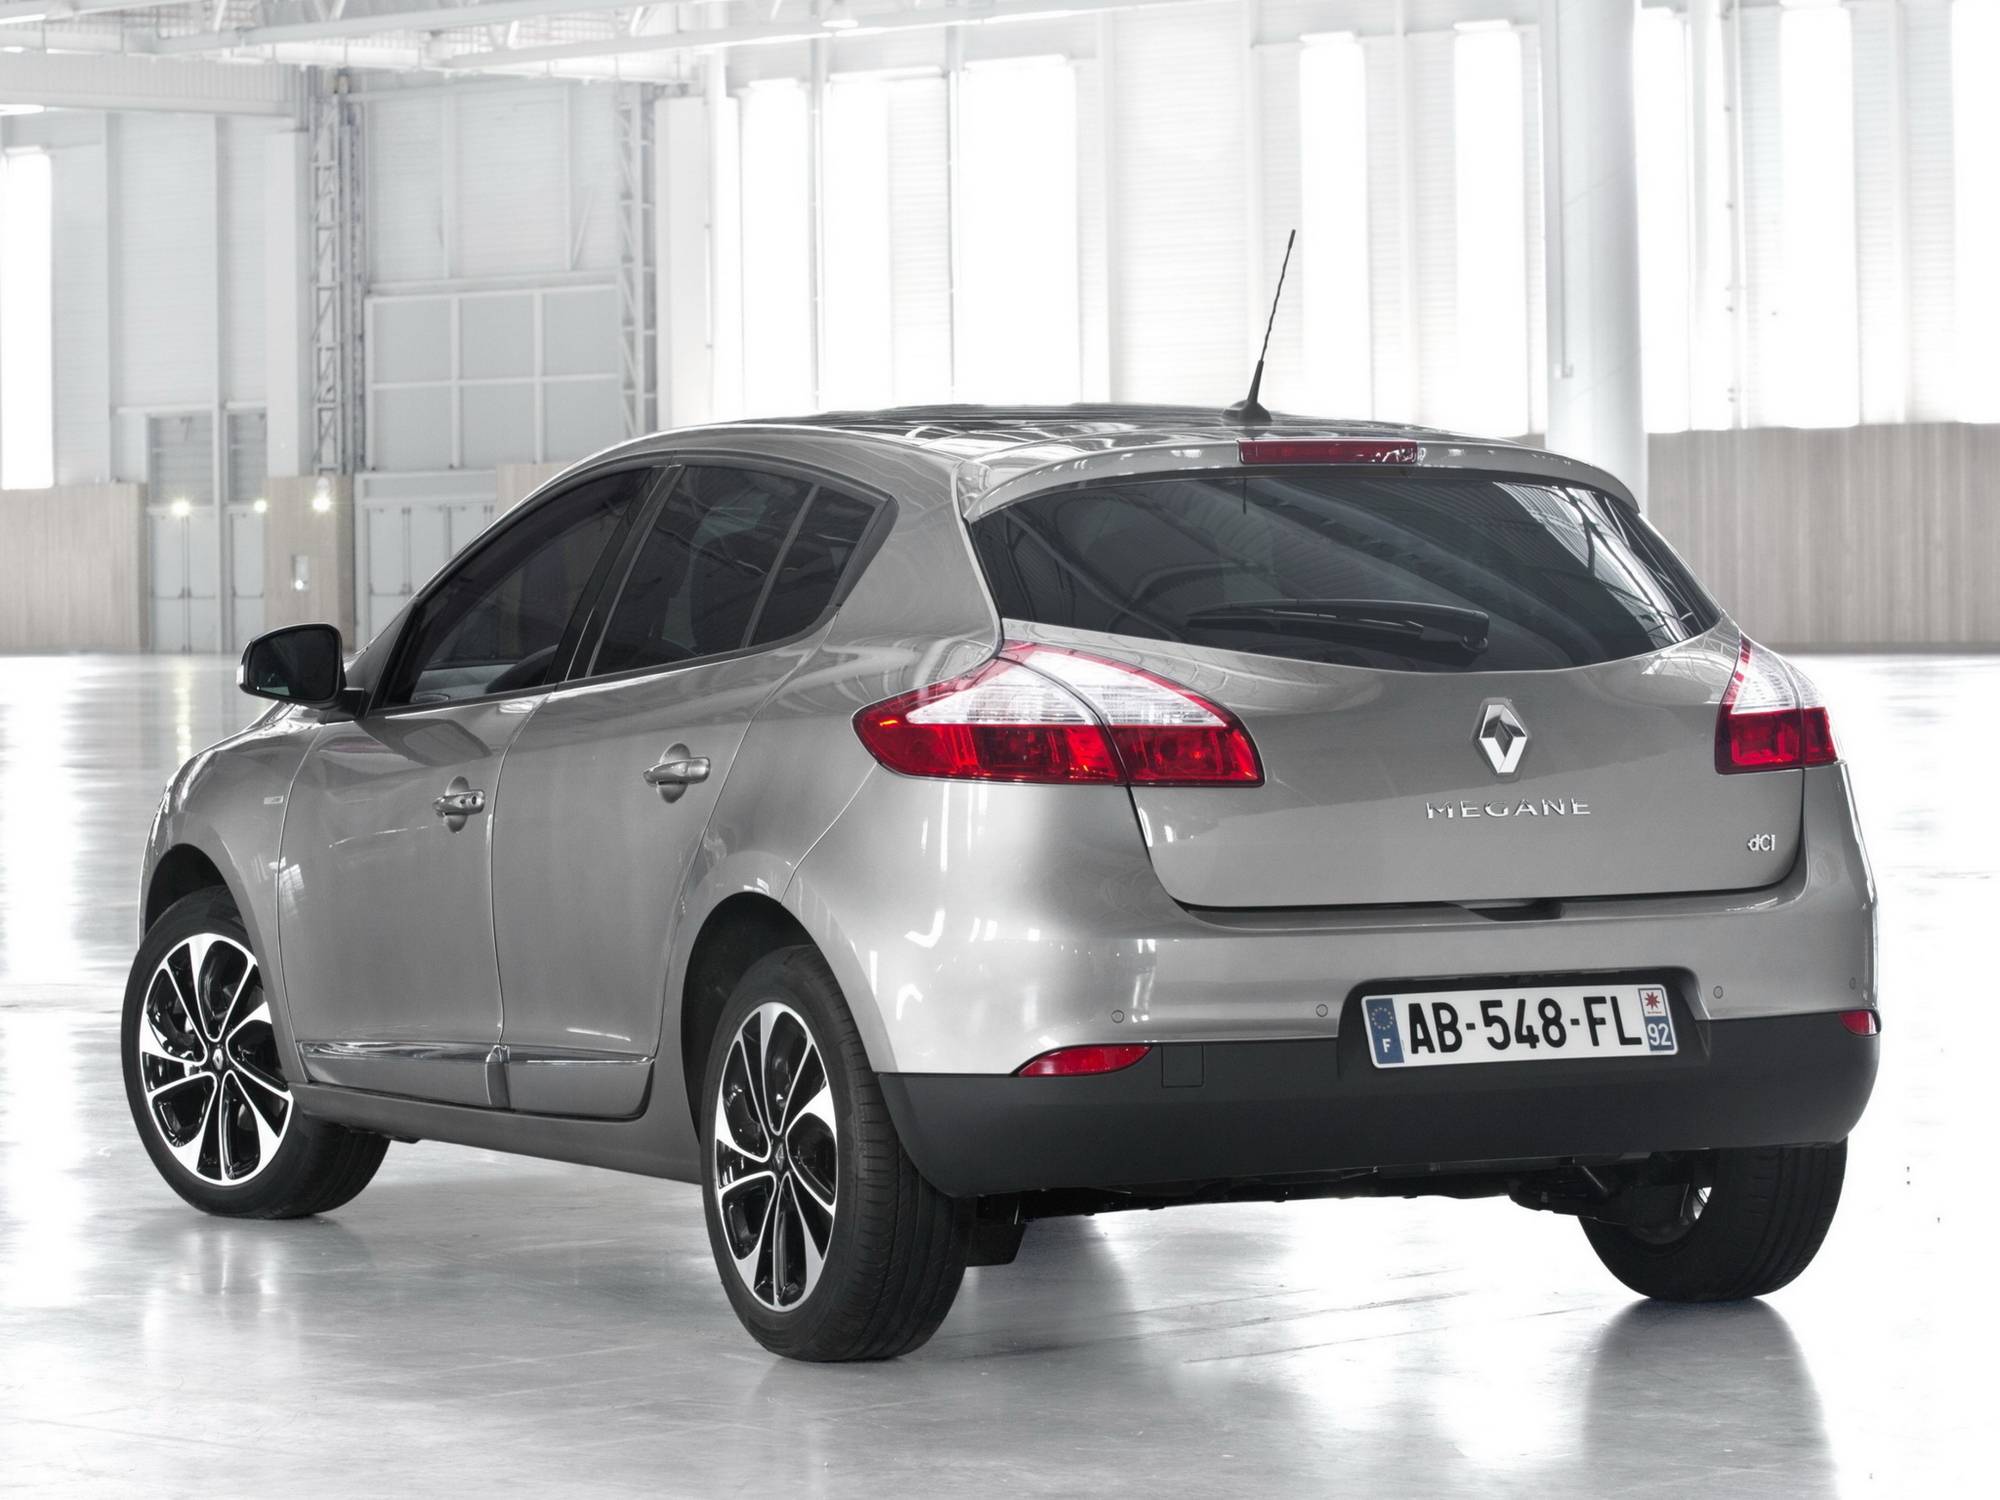 Renault megane 3 на российском рынке. плюсы и минусы по опыту эксплутации |  автотопик | дзен